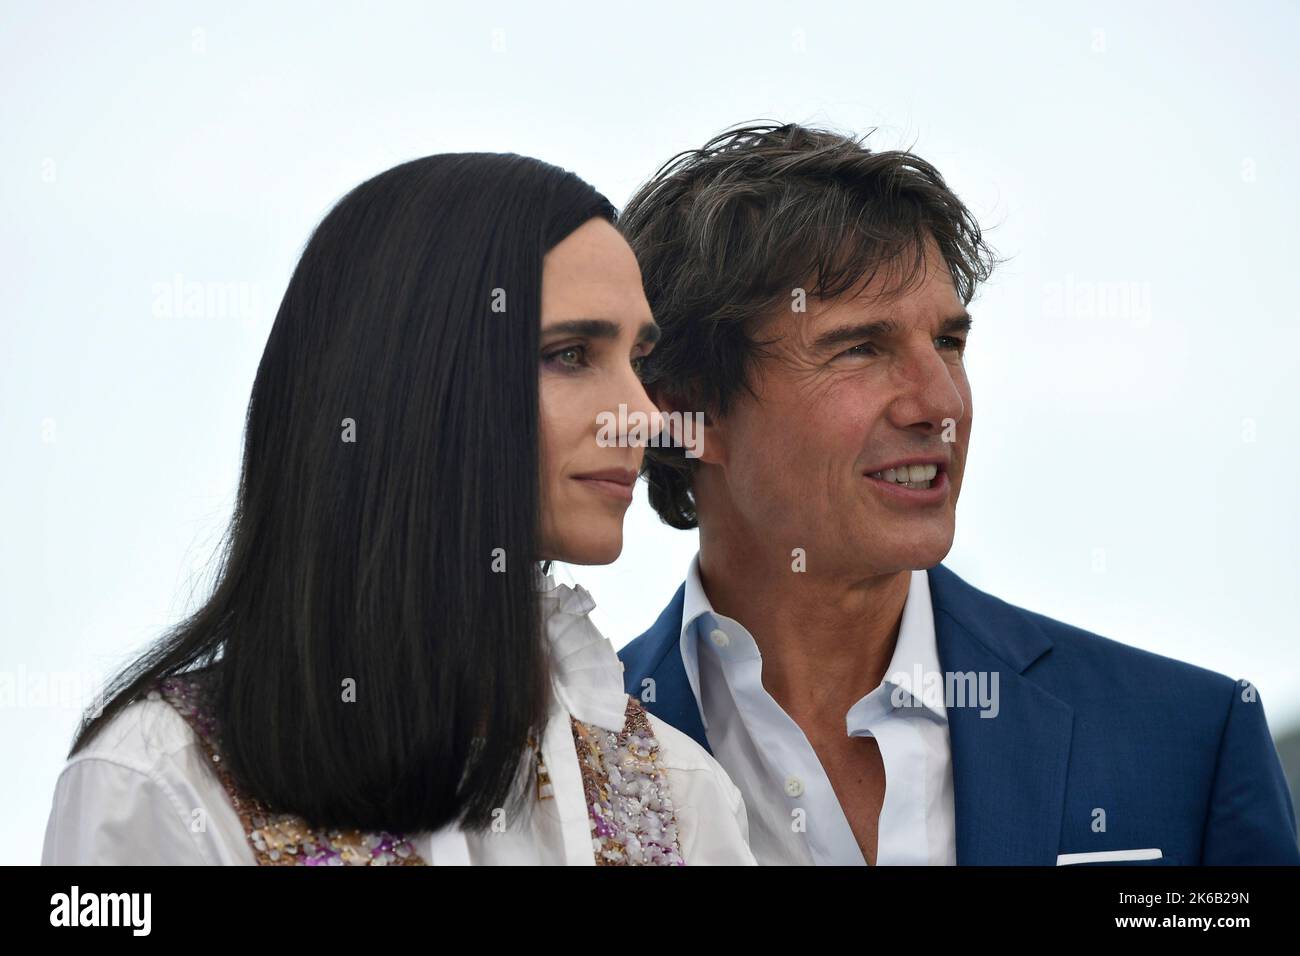 Attore Tom Cruise e attrice Jennifer Connelly in posa durante la fotocall del film “Top Gun: Maverick” in occasione del Festival di Cannes Foto Stock